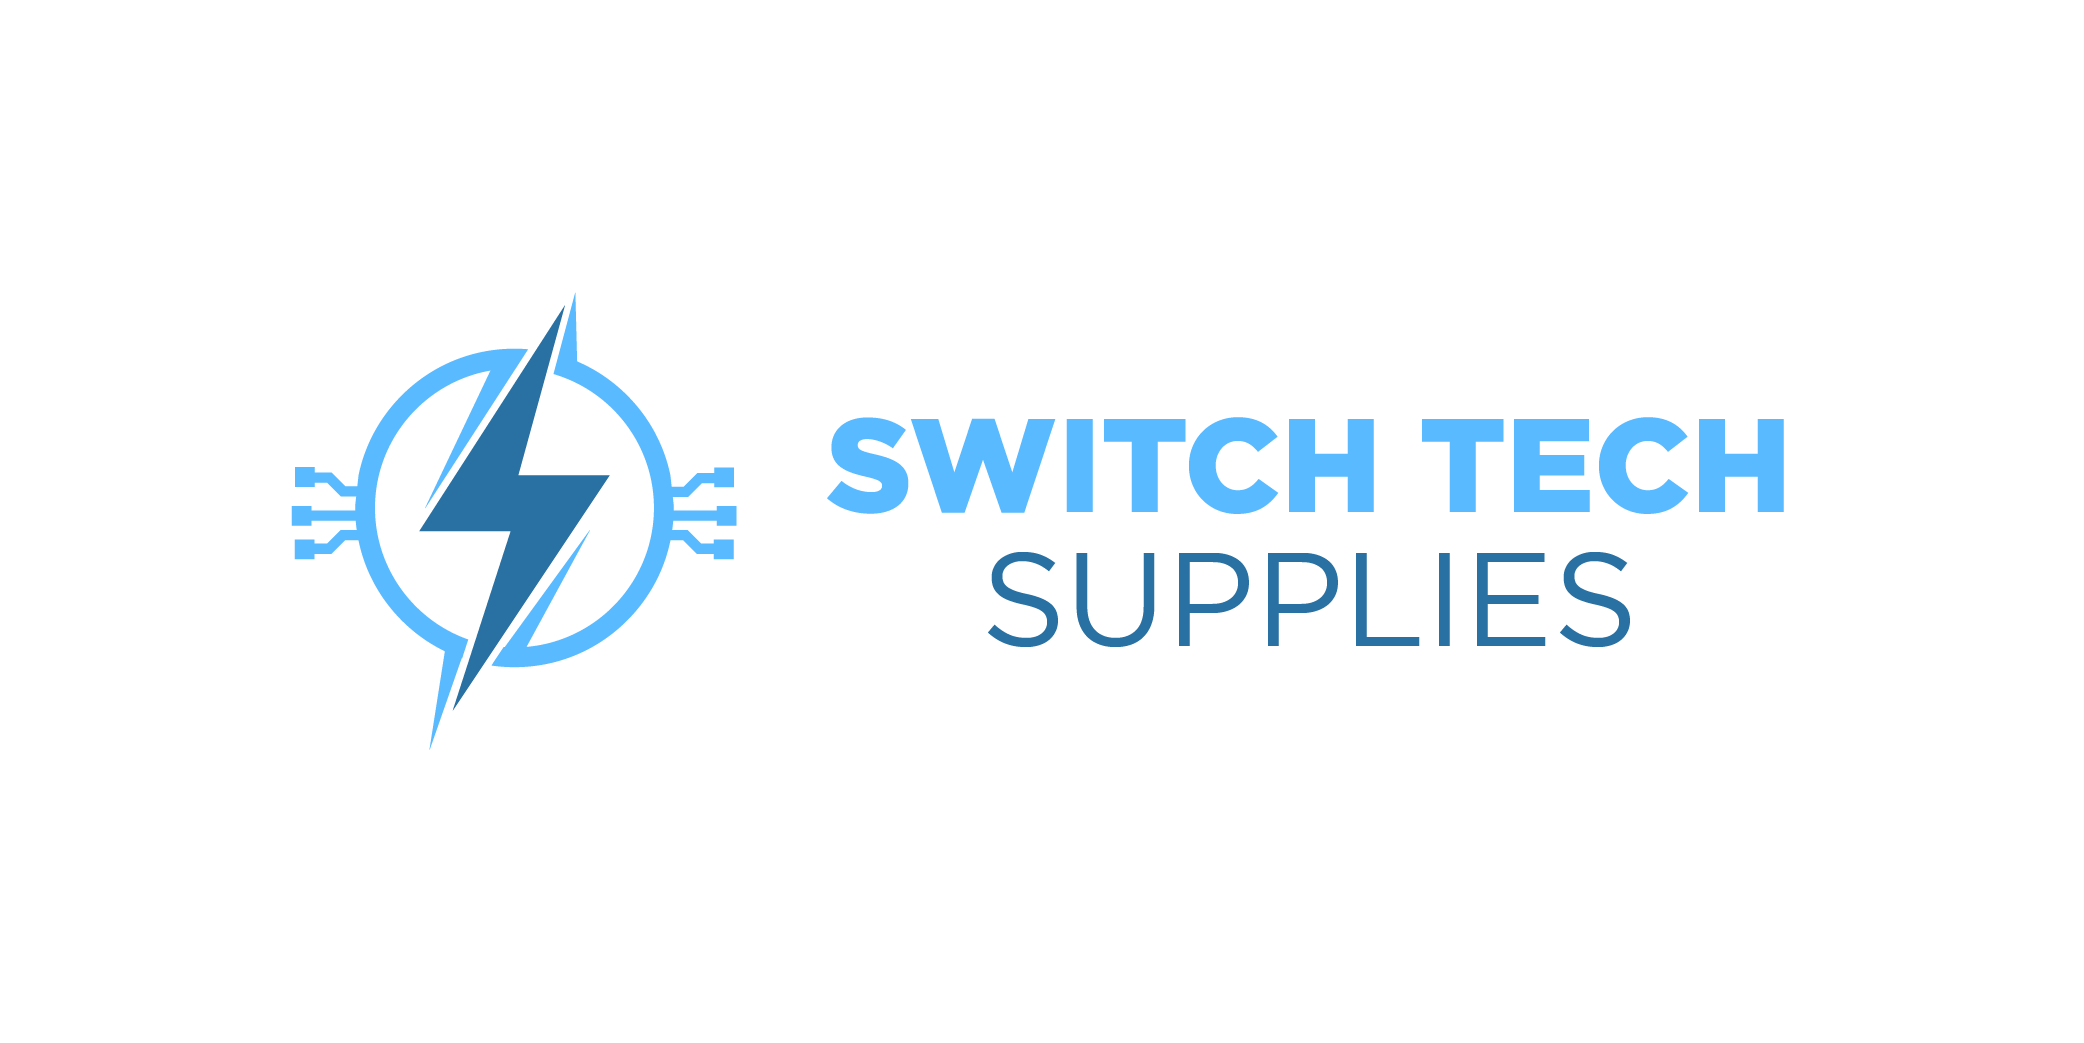 Switch Tech Supplies, LLC